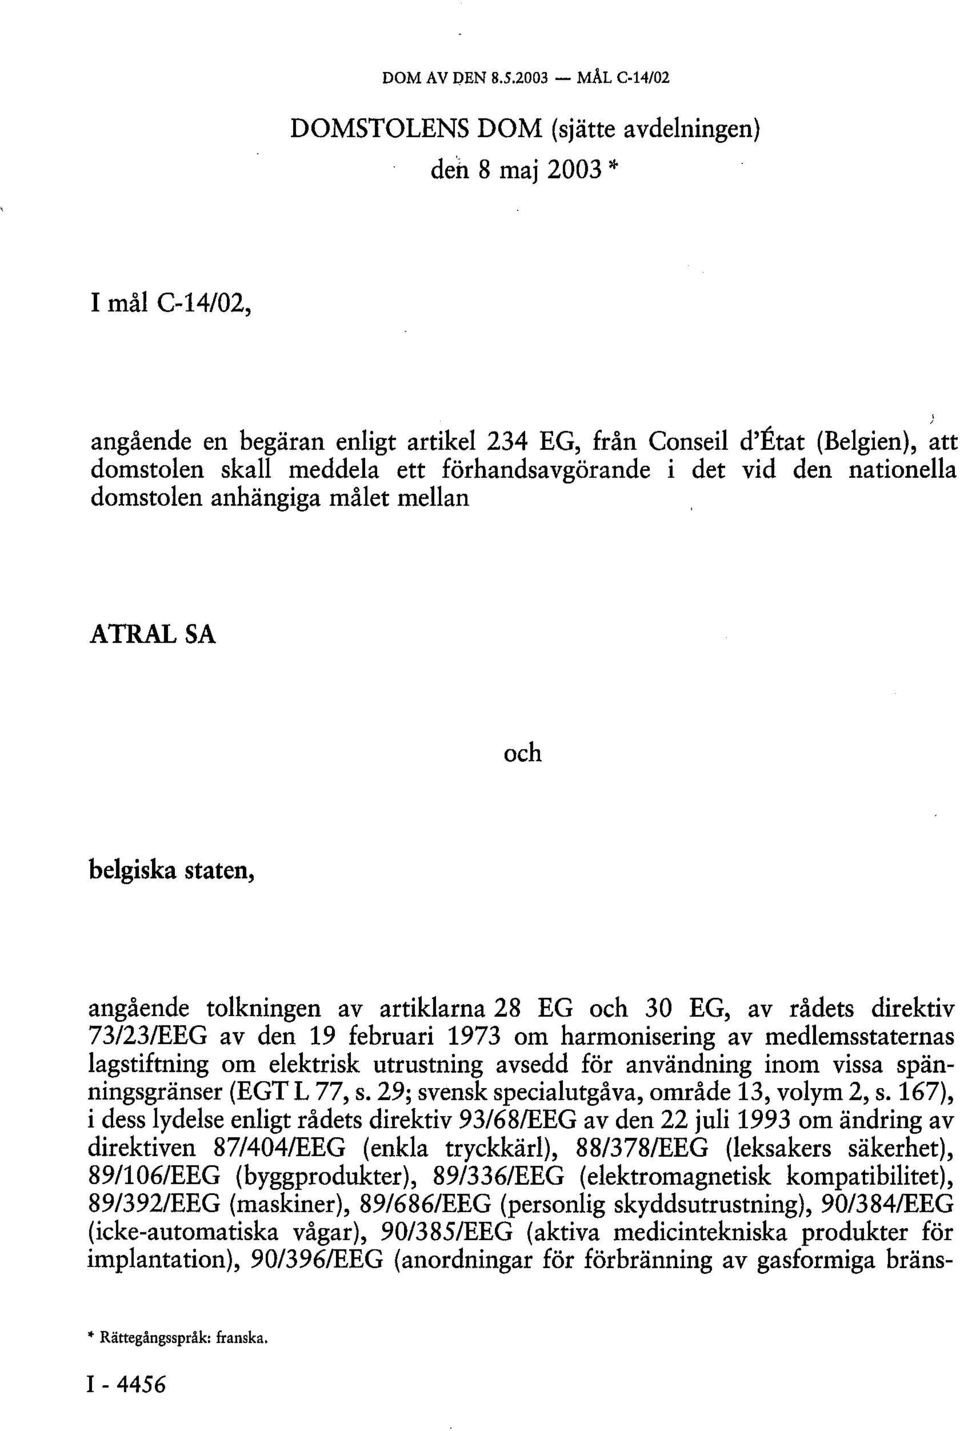 förhandsavgörande i det vid den nationella domstolen anhängiga målet mellan ATRALSA och belgiska staten, angående tolkningen av artiklarna 28 EG och 30 EG, av rådets direktiv 73/23/EEG av den 19